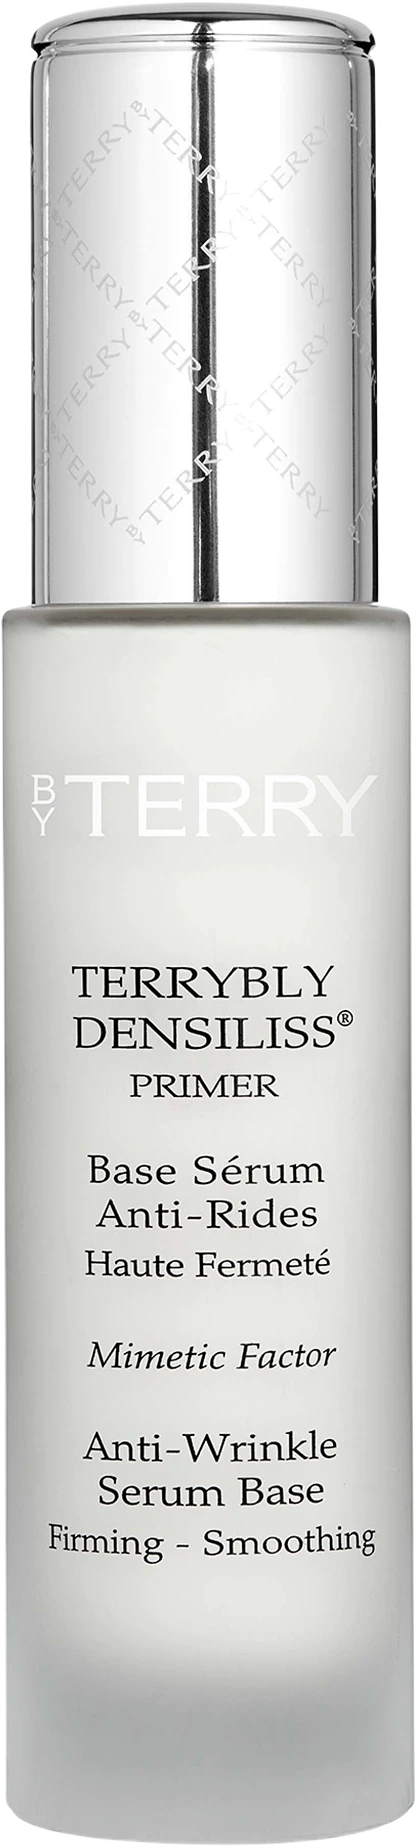 Terrybly Densiliss Primer